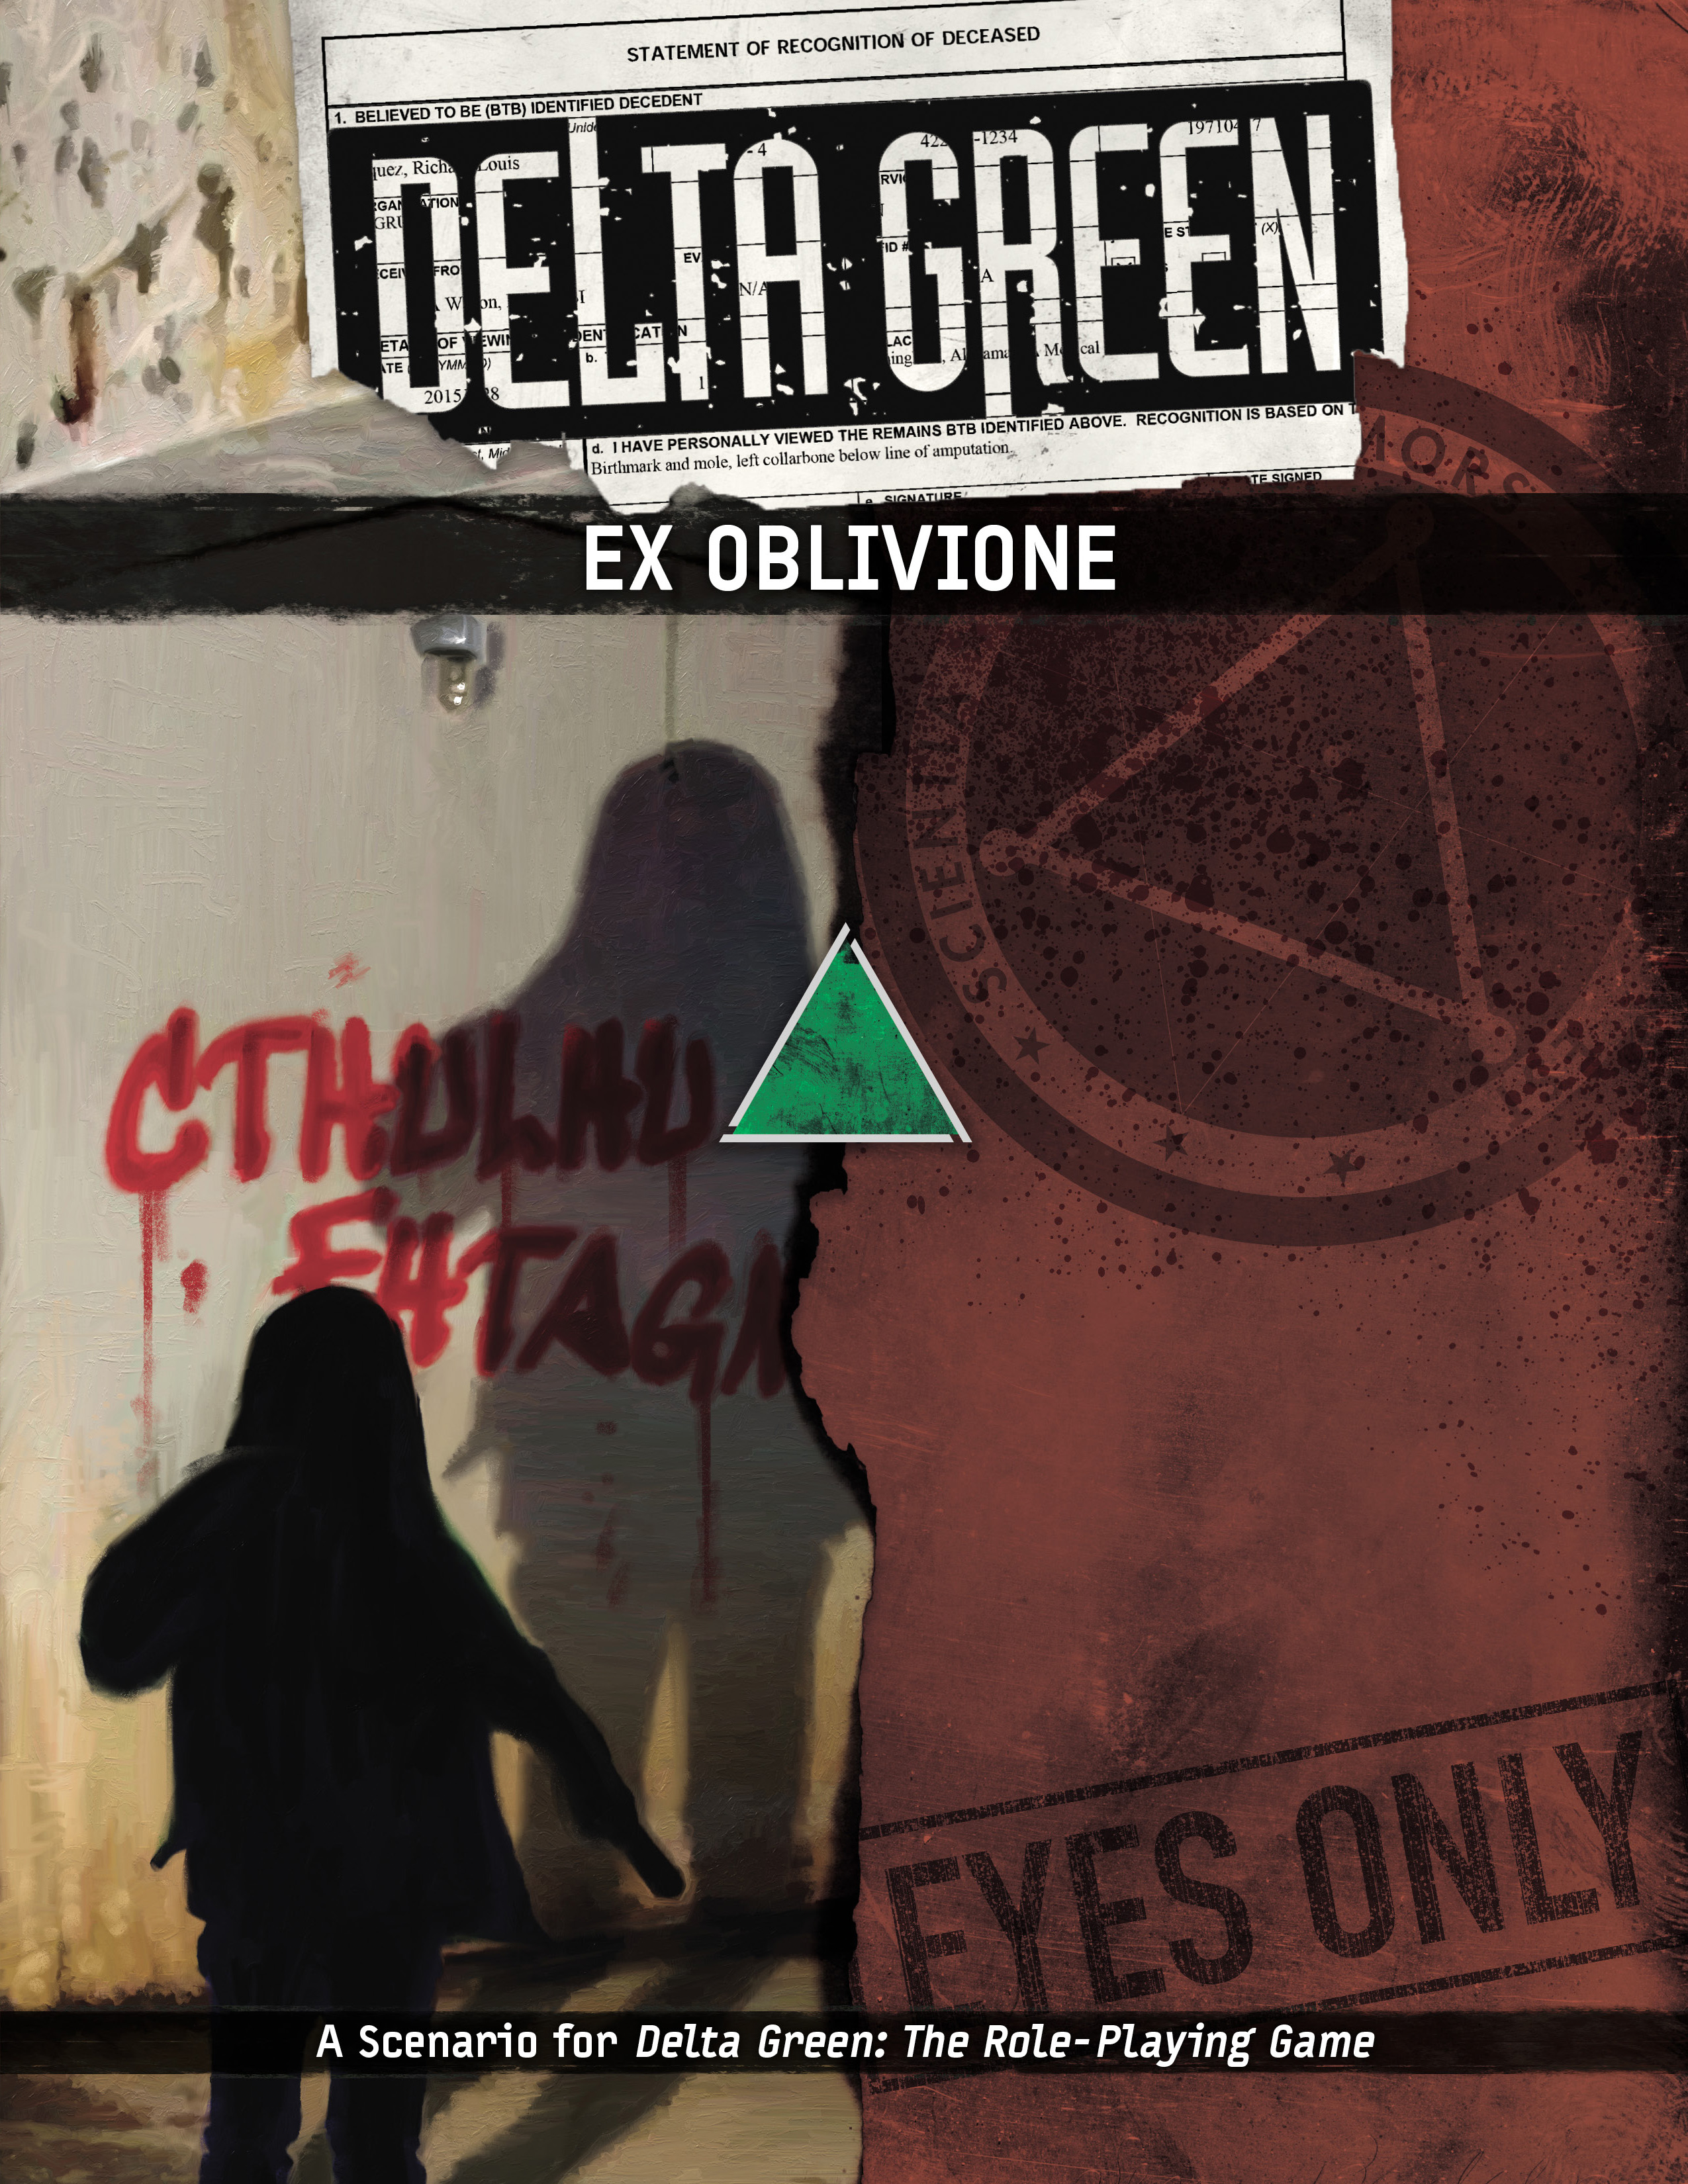 Cover art for Delta Green: Ex Oblivione